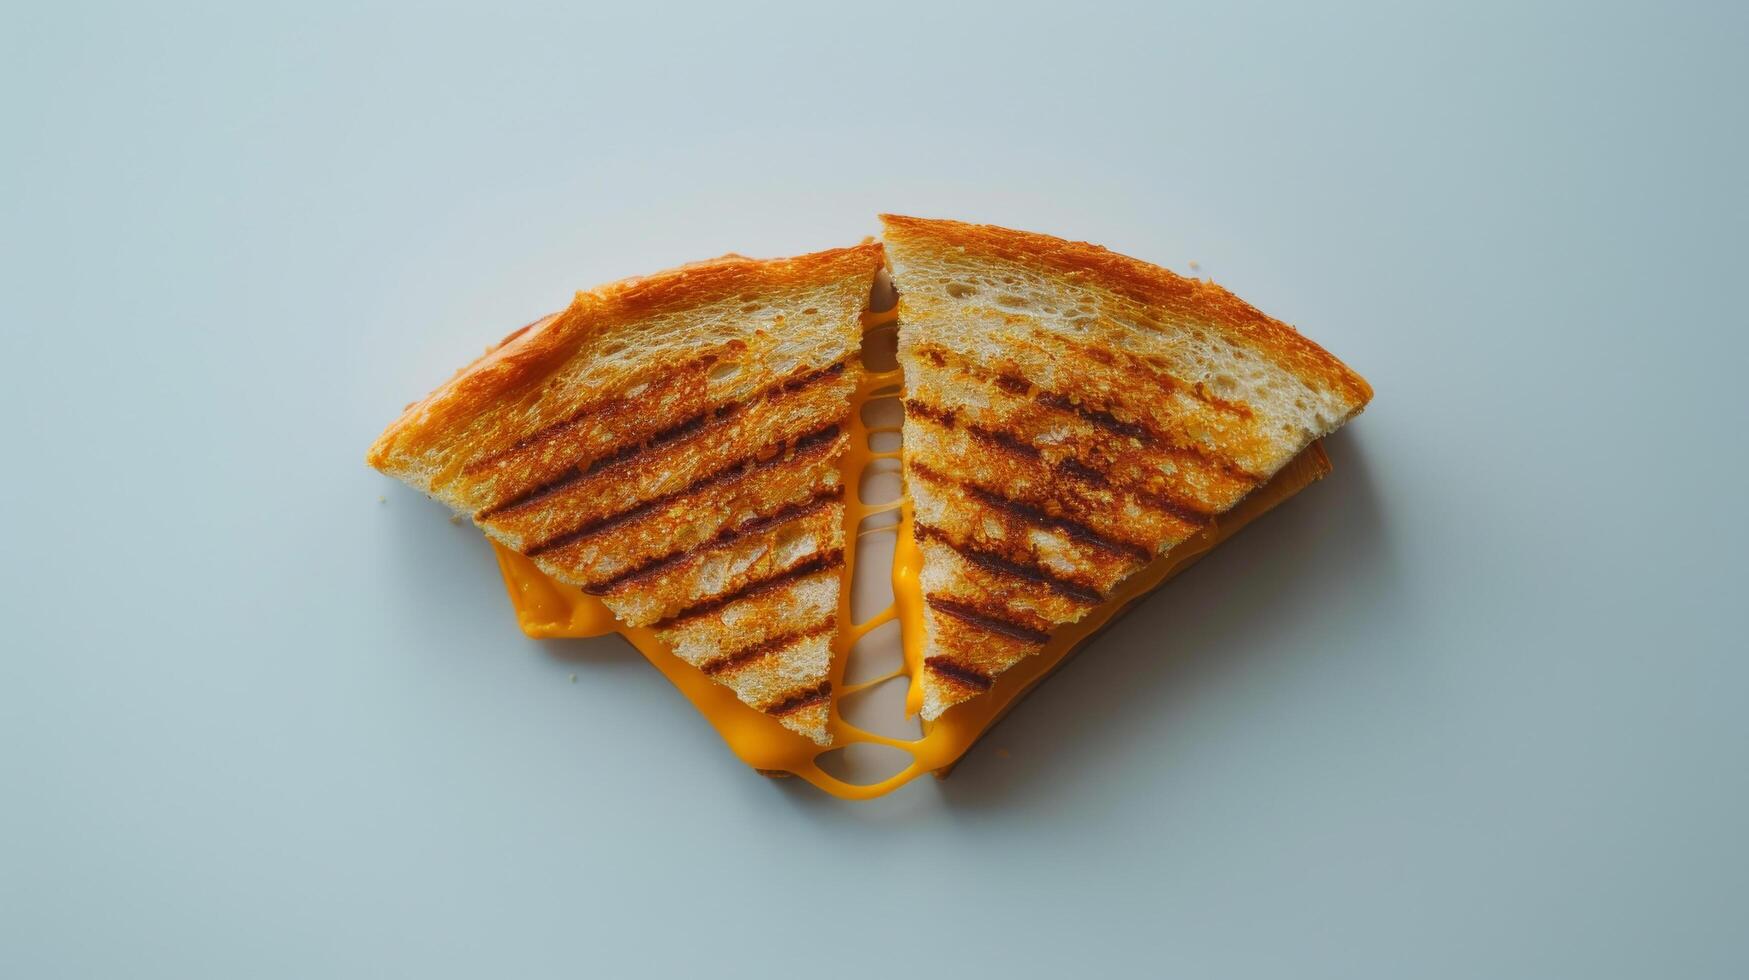 een plak van geroosterd brood met gesmolten kaas Aan bovenkant, de brood is geroosterd en heeft een gouden bruin kleur foto